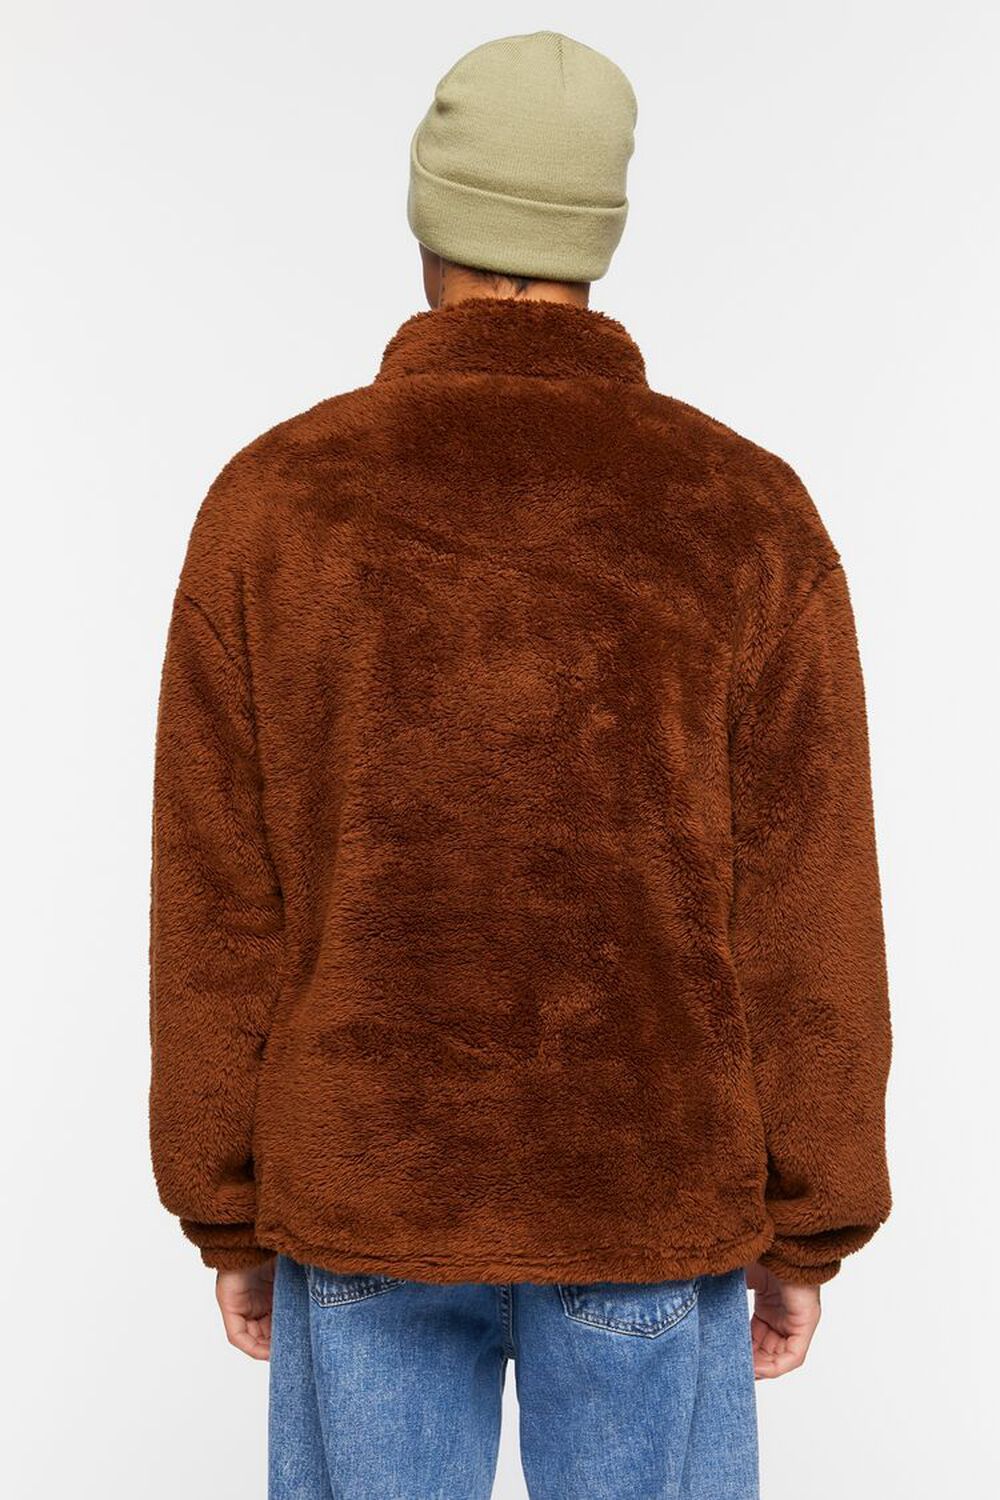 BROWN Plush Half-Zip Jacket, image 3